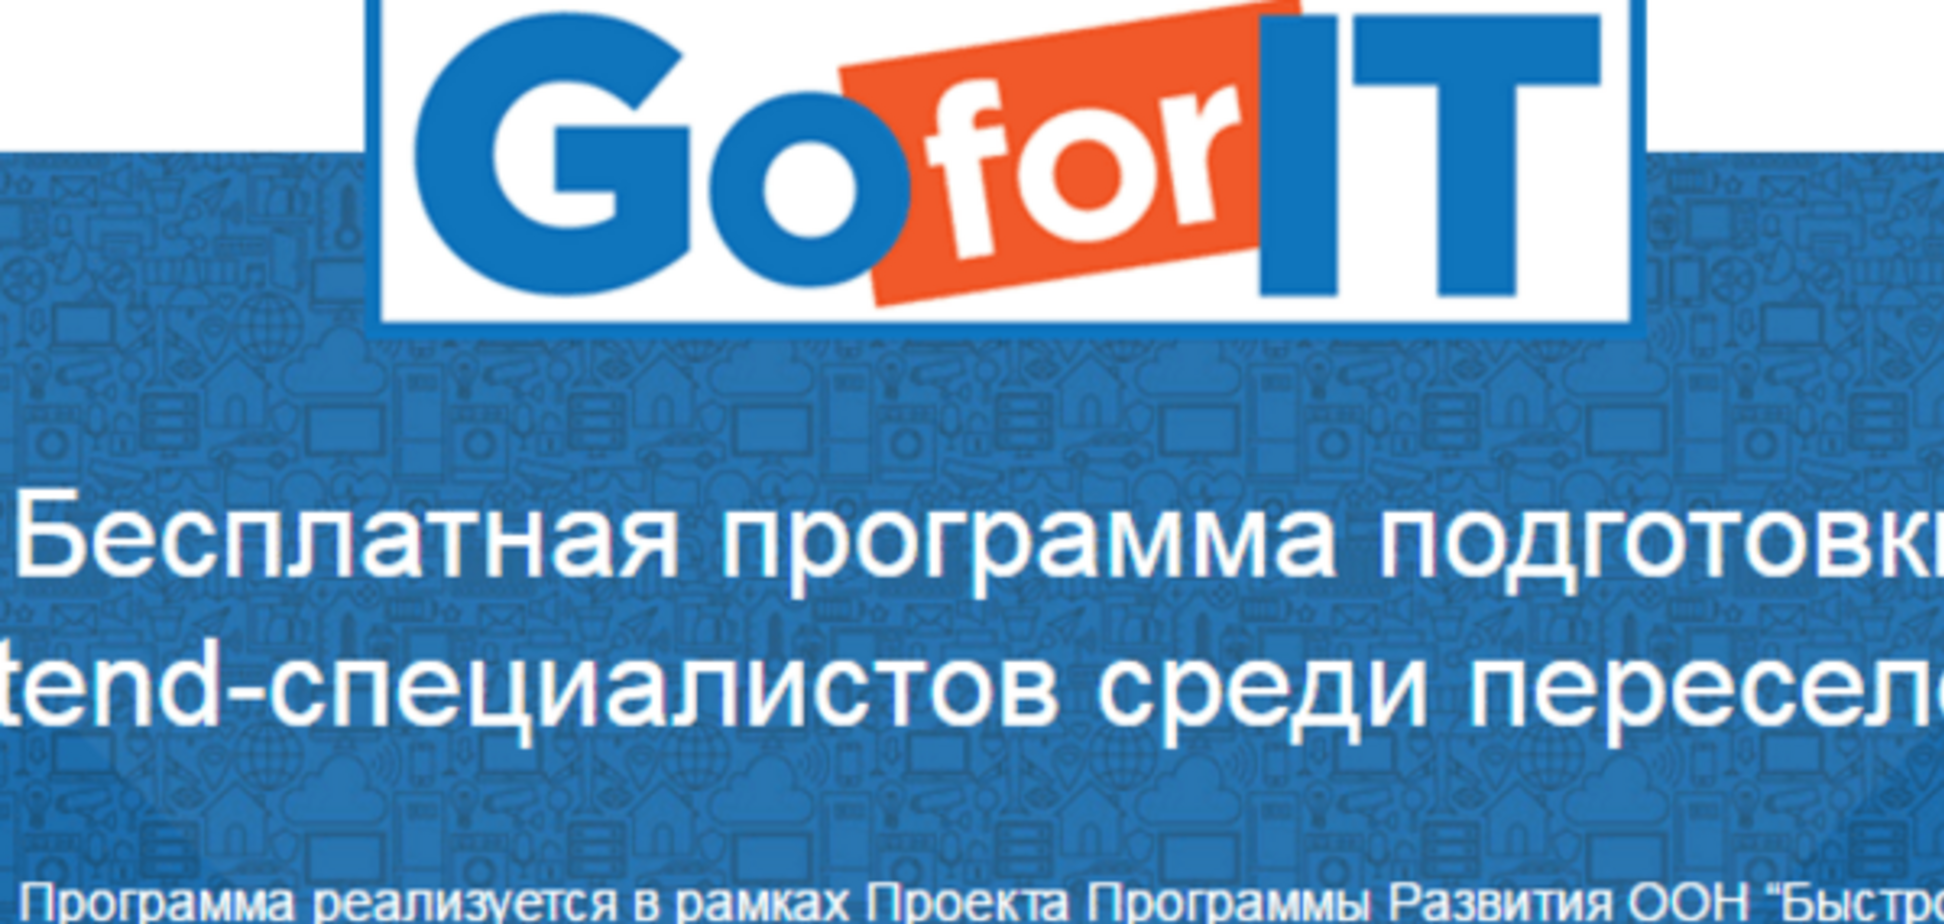 В Украине запустили бесплатные IT-курсы для переселенцев